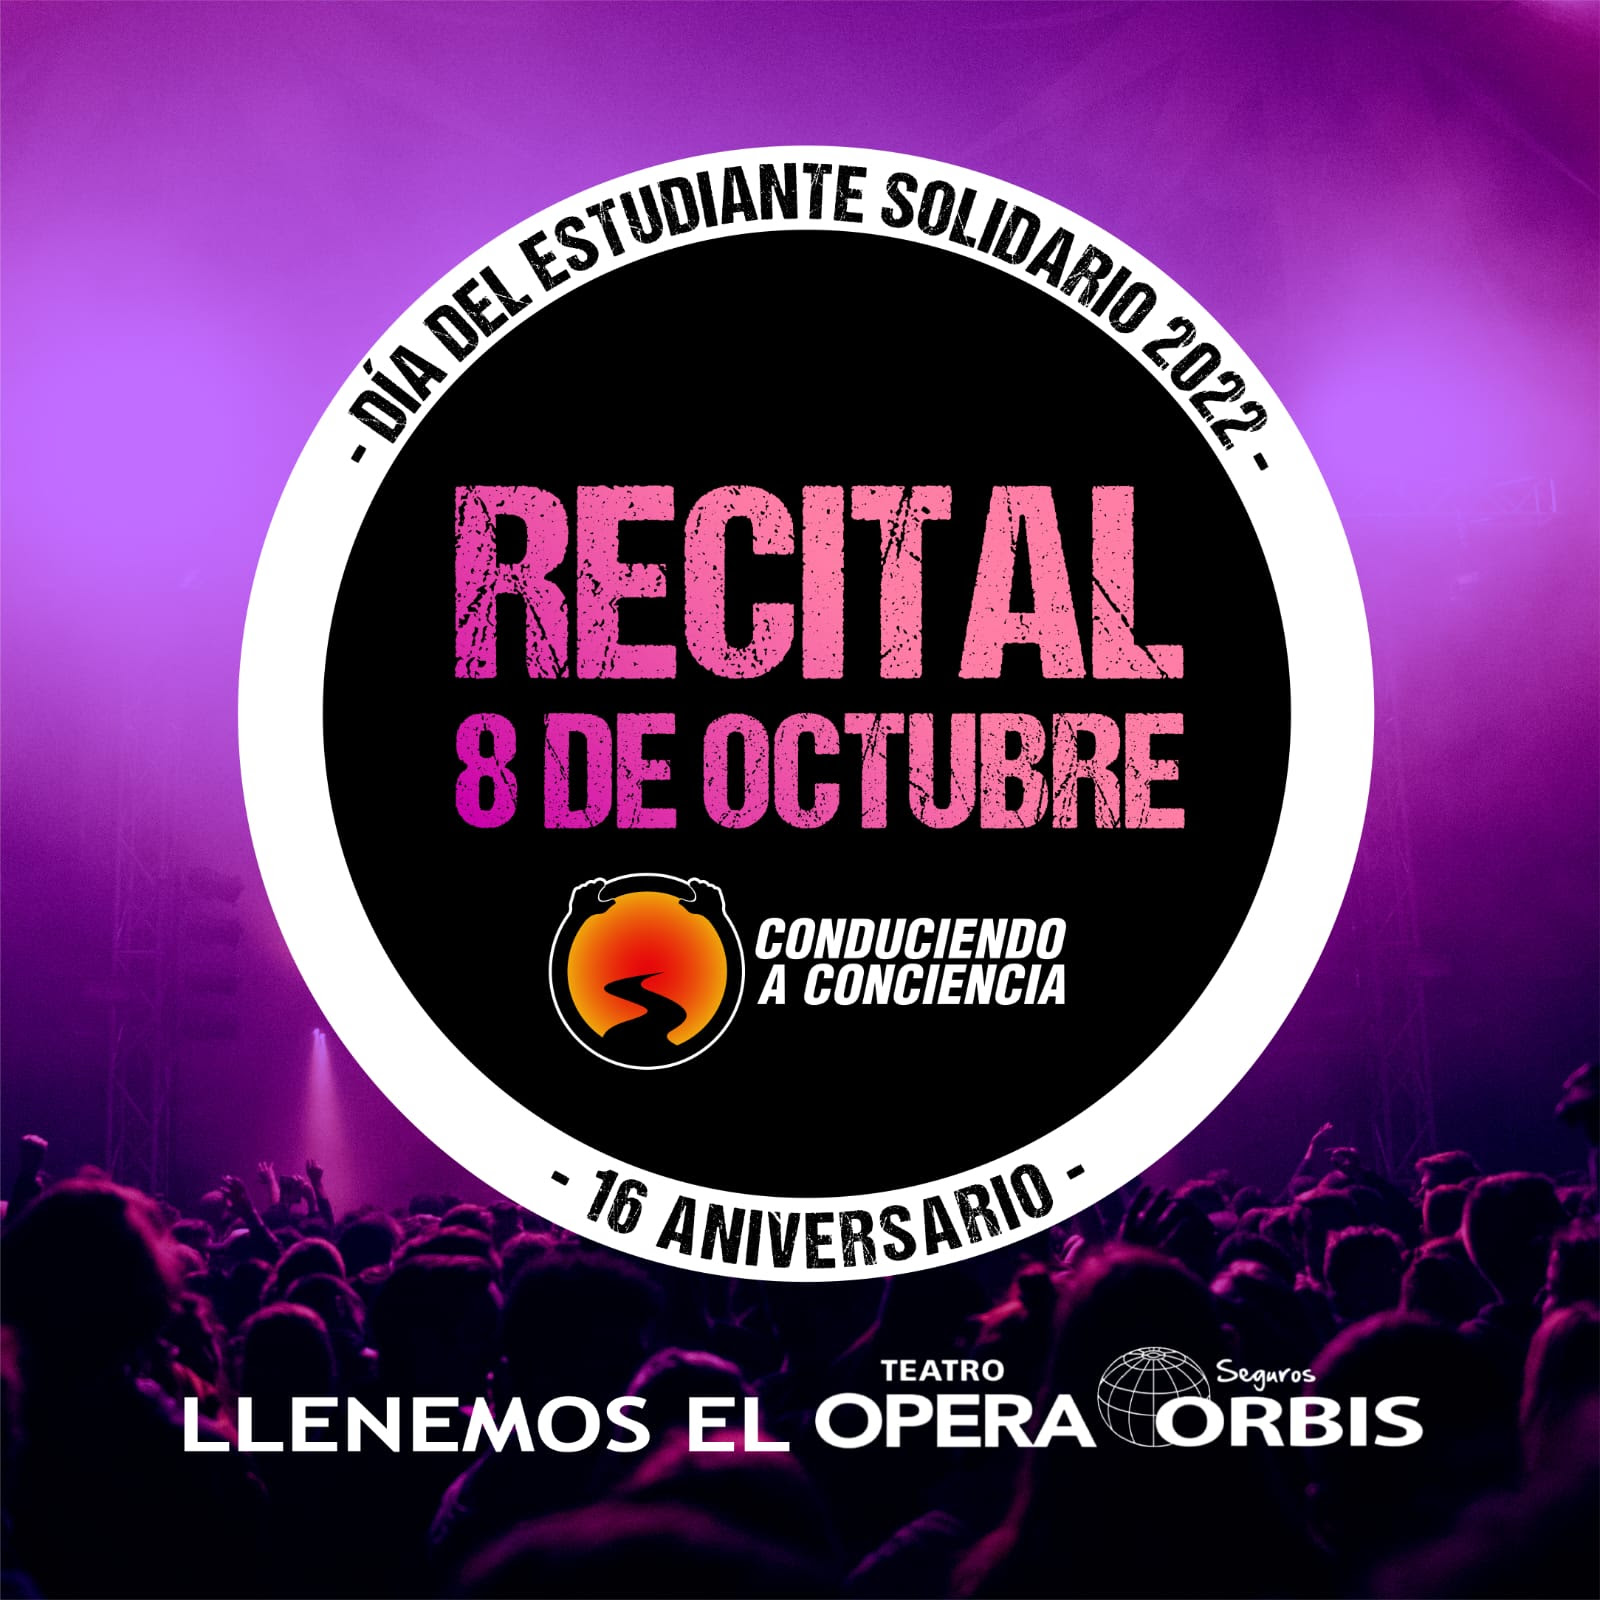 Llega el «Dia Del Estudiante Solidario» en el Teatro Opera Orbis